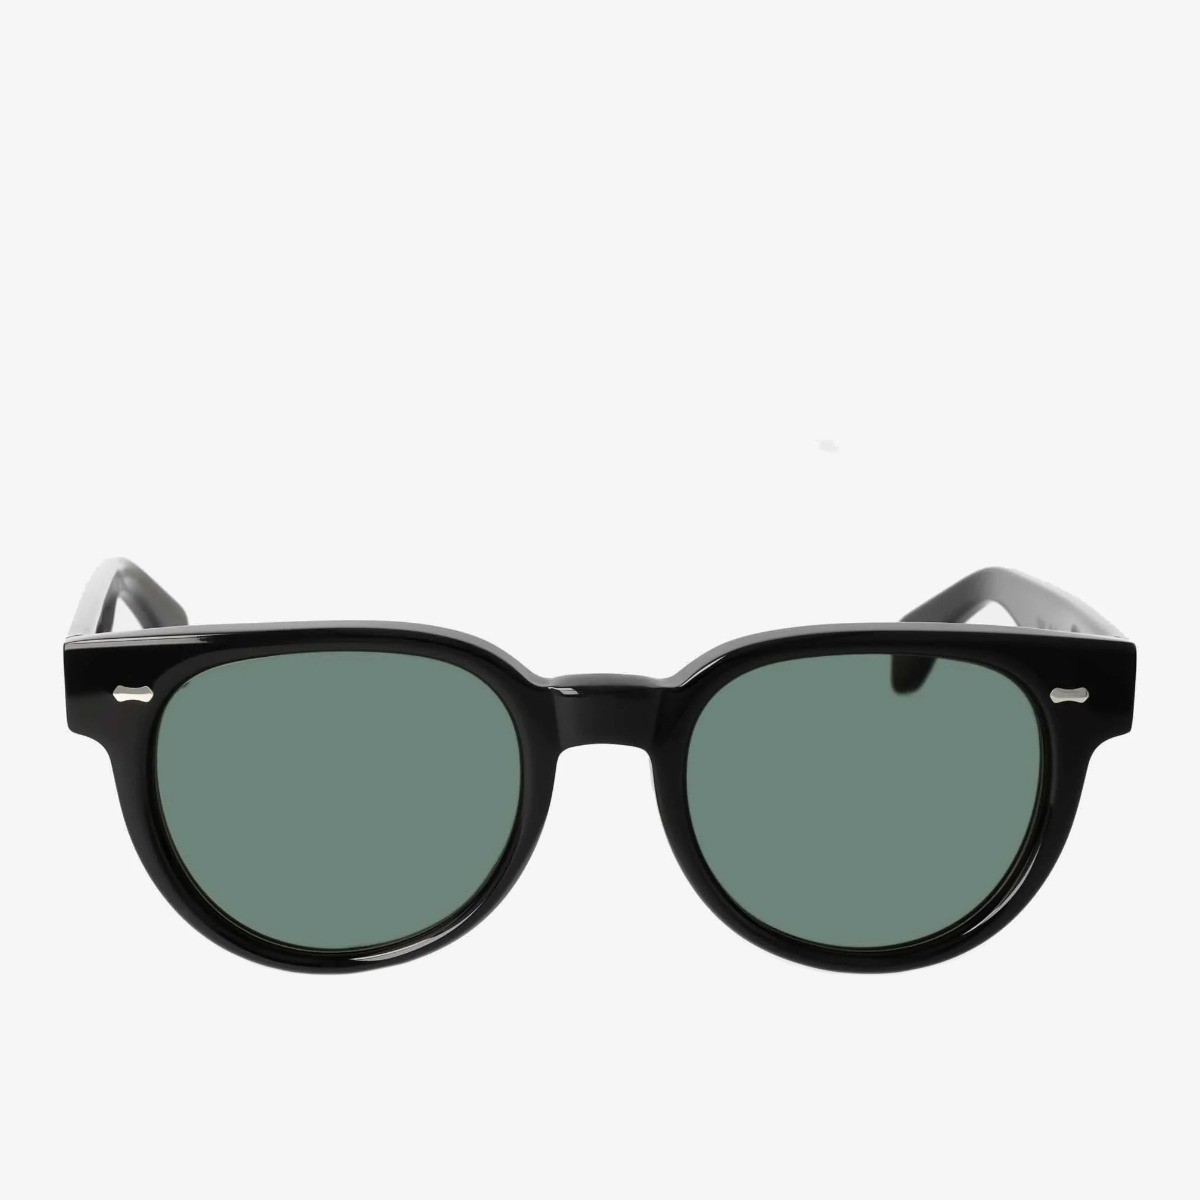 TBD Eyewear Palm saulės akiniai juodais rėmeliais ir žaliais lęšiais